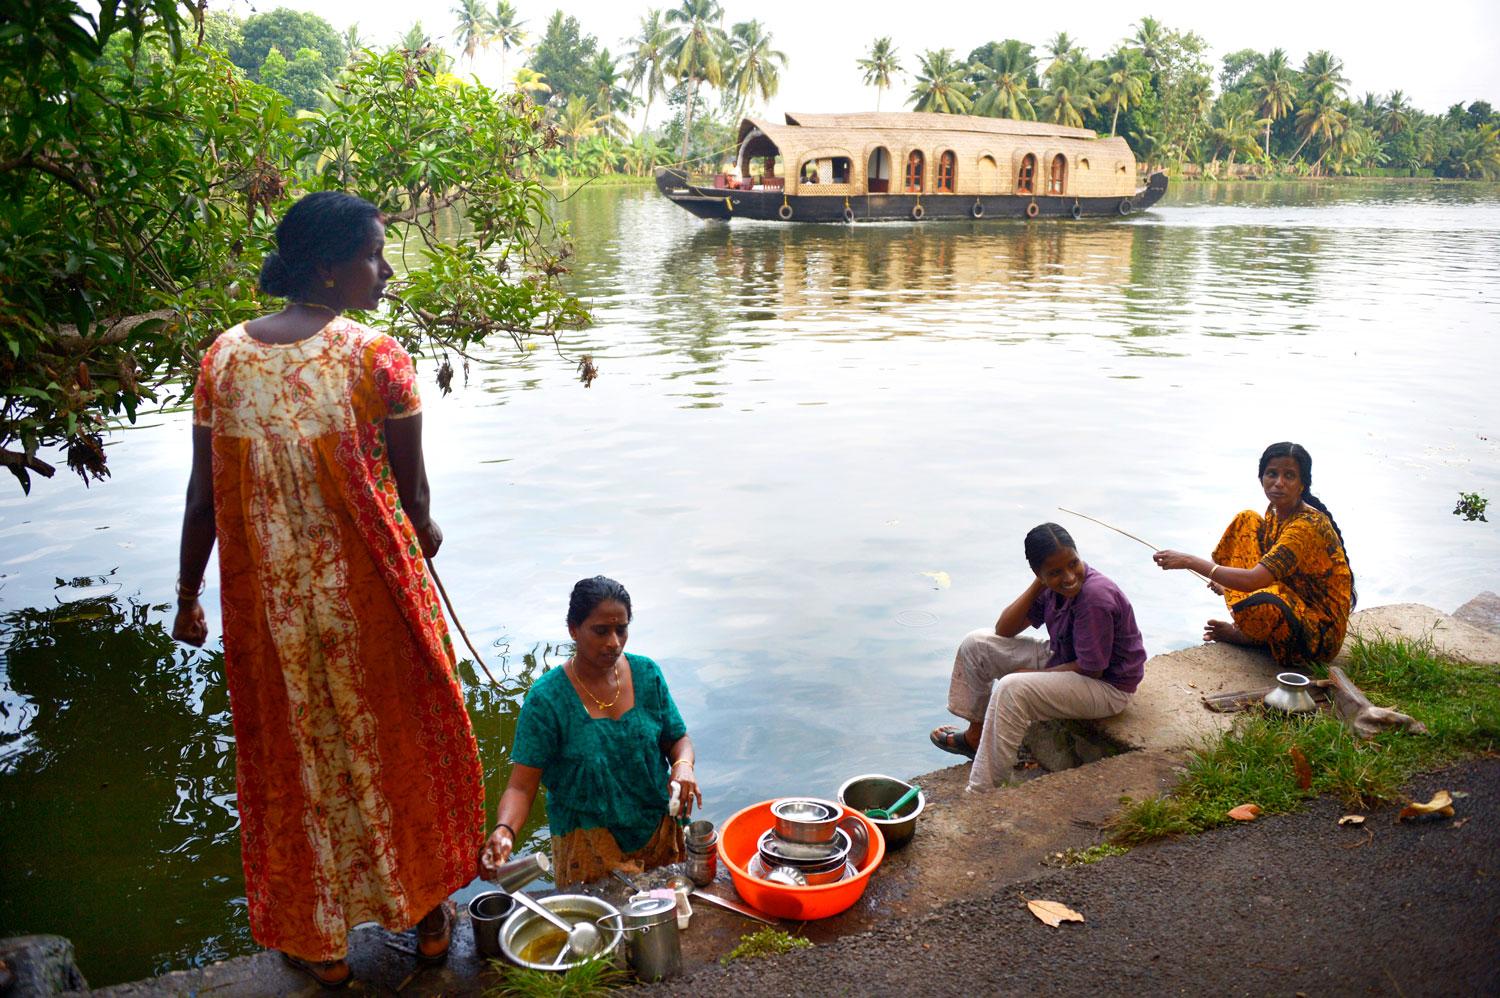 POPULÄRT RESMÅL Kerala är en av Indiens största turistdestinationer. Många reser hit för att bo på husbåt och åka runt i de s k "backwaters".